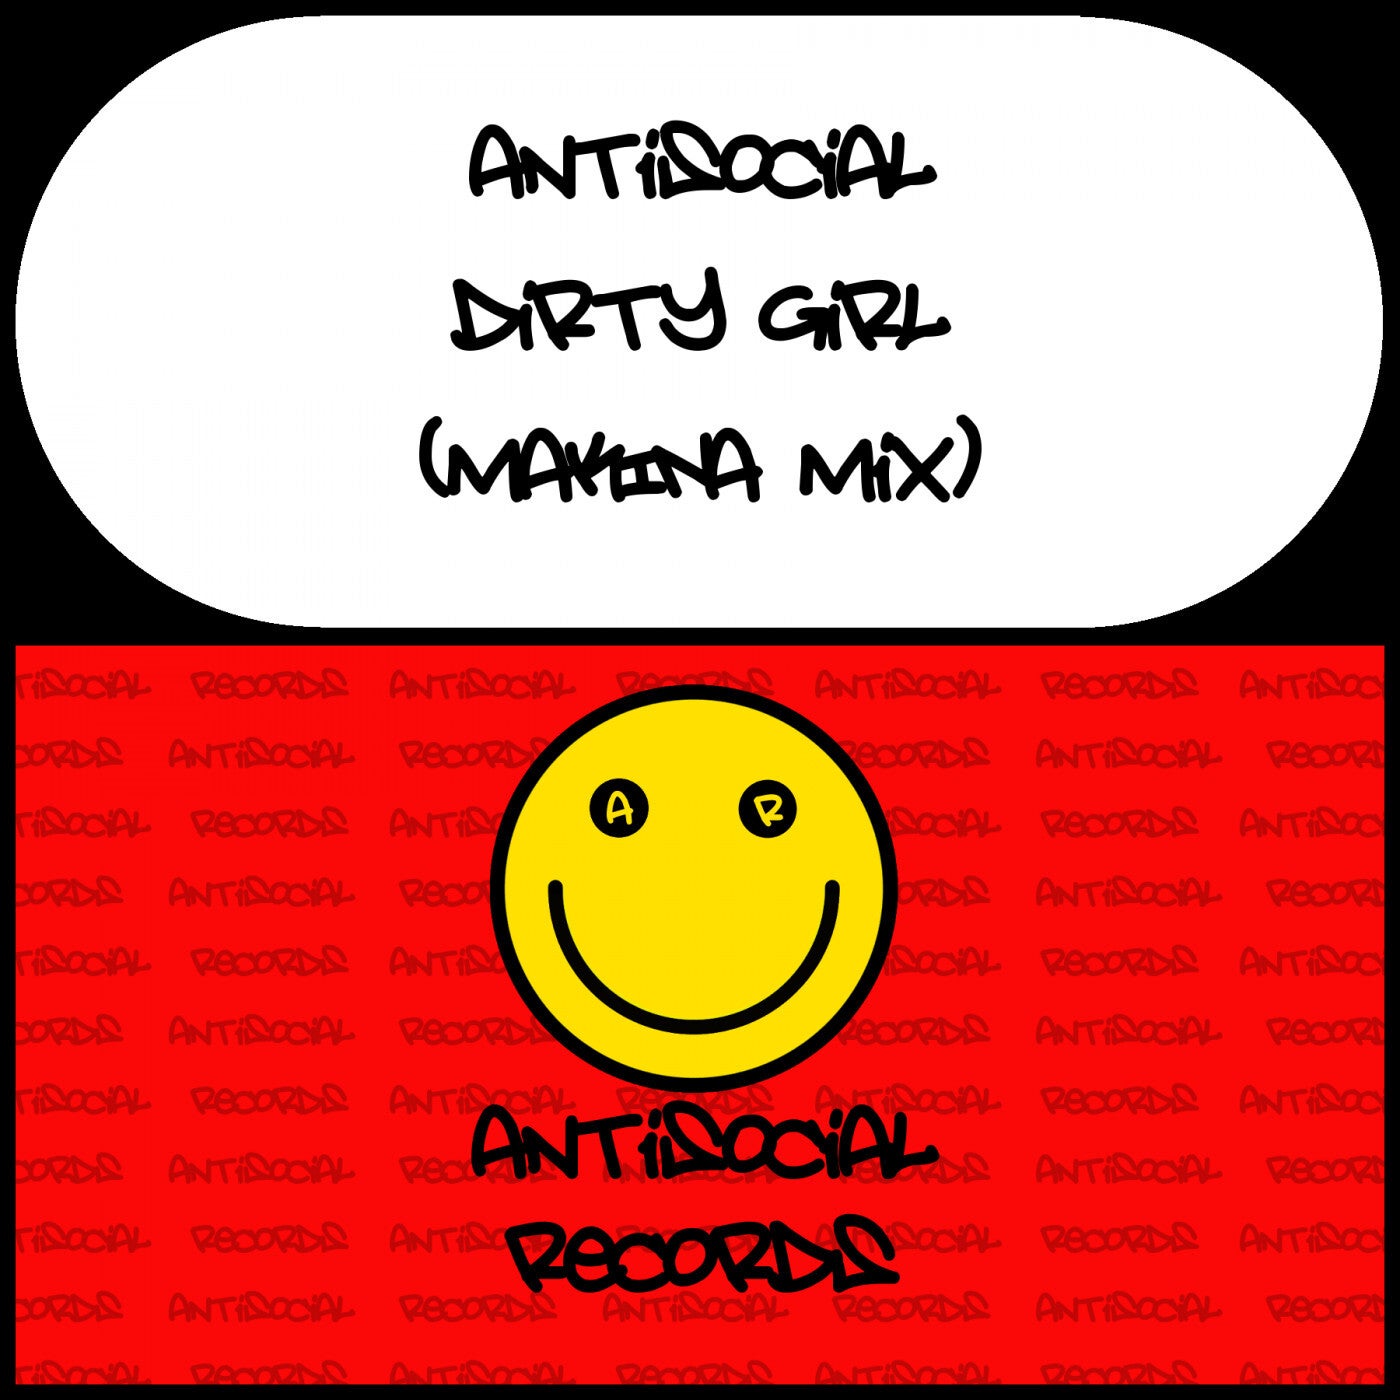 Dirty Girl (Makina Mix)